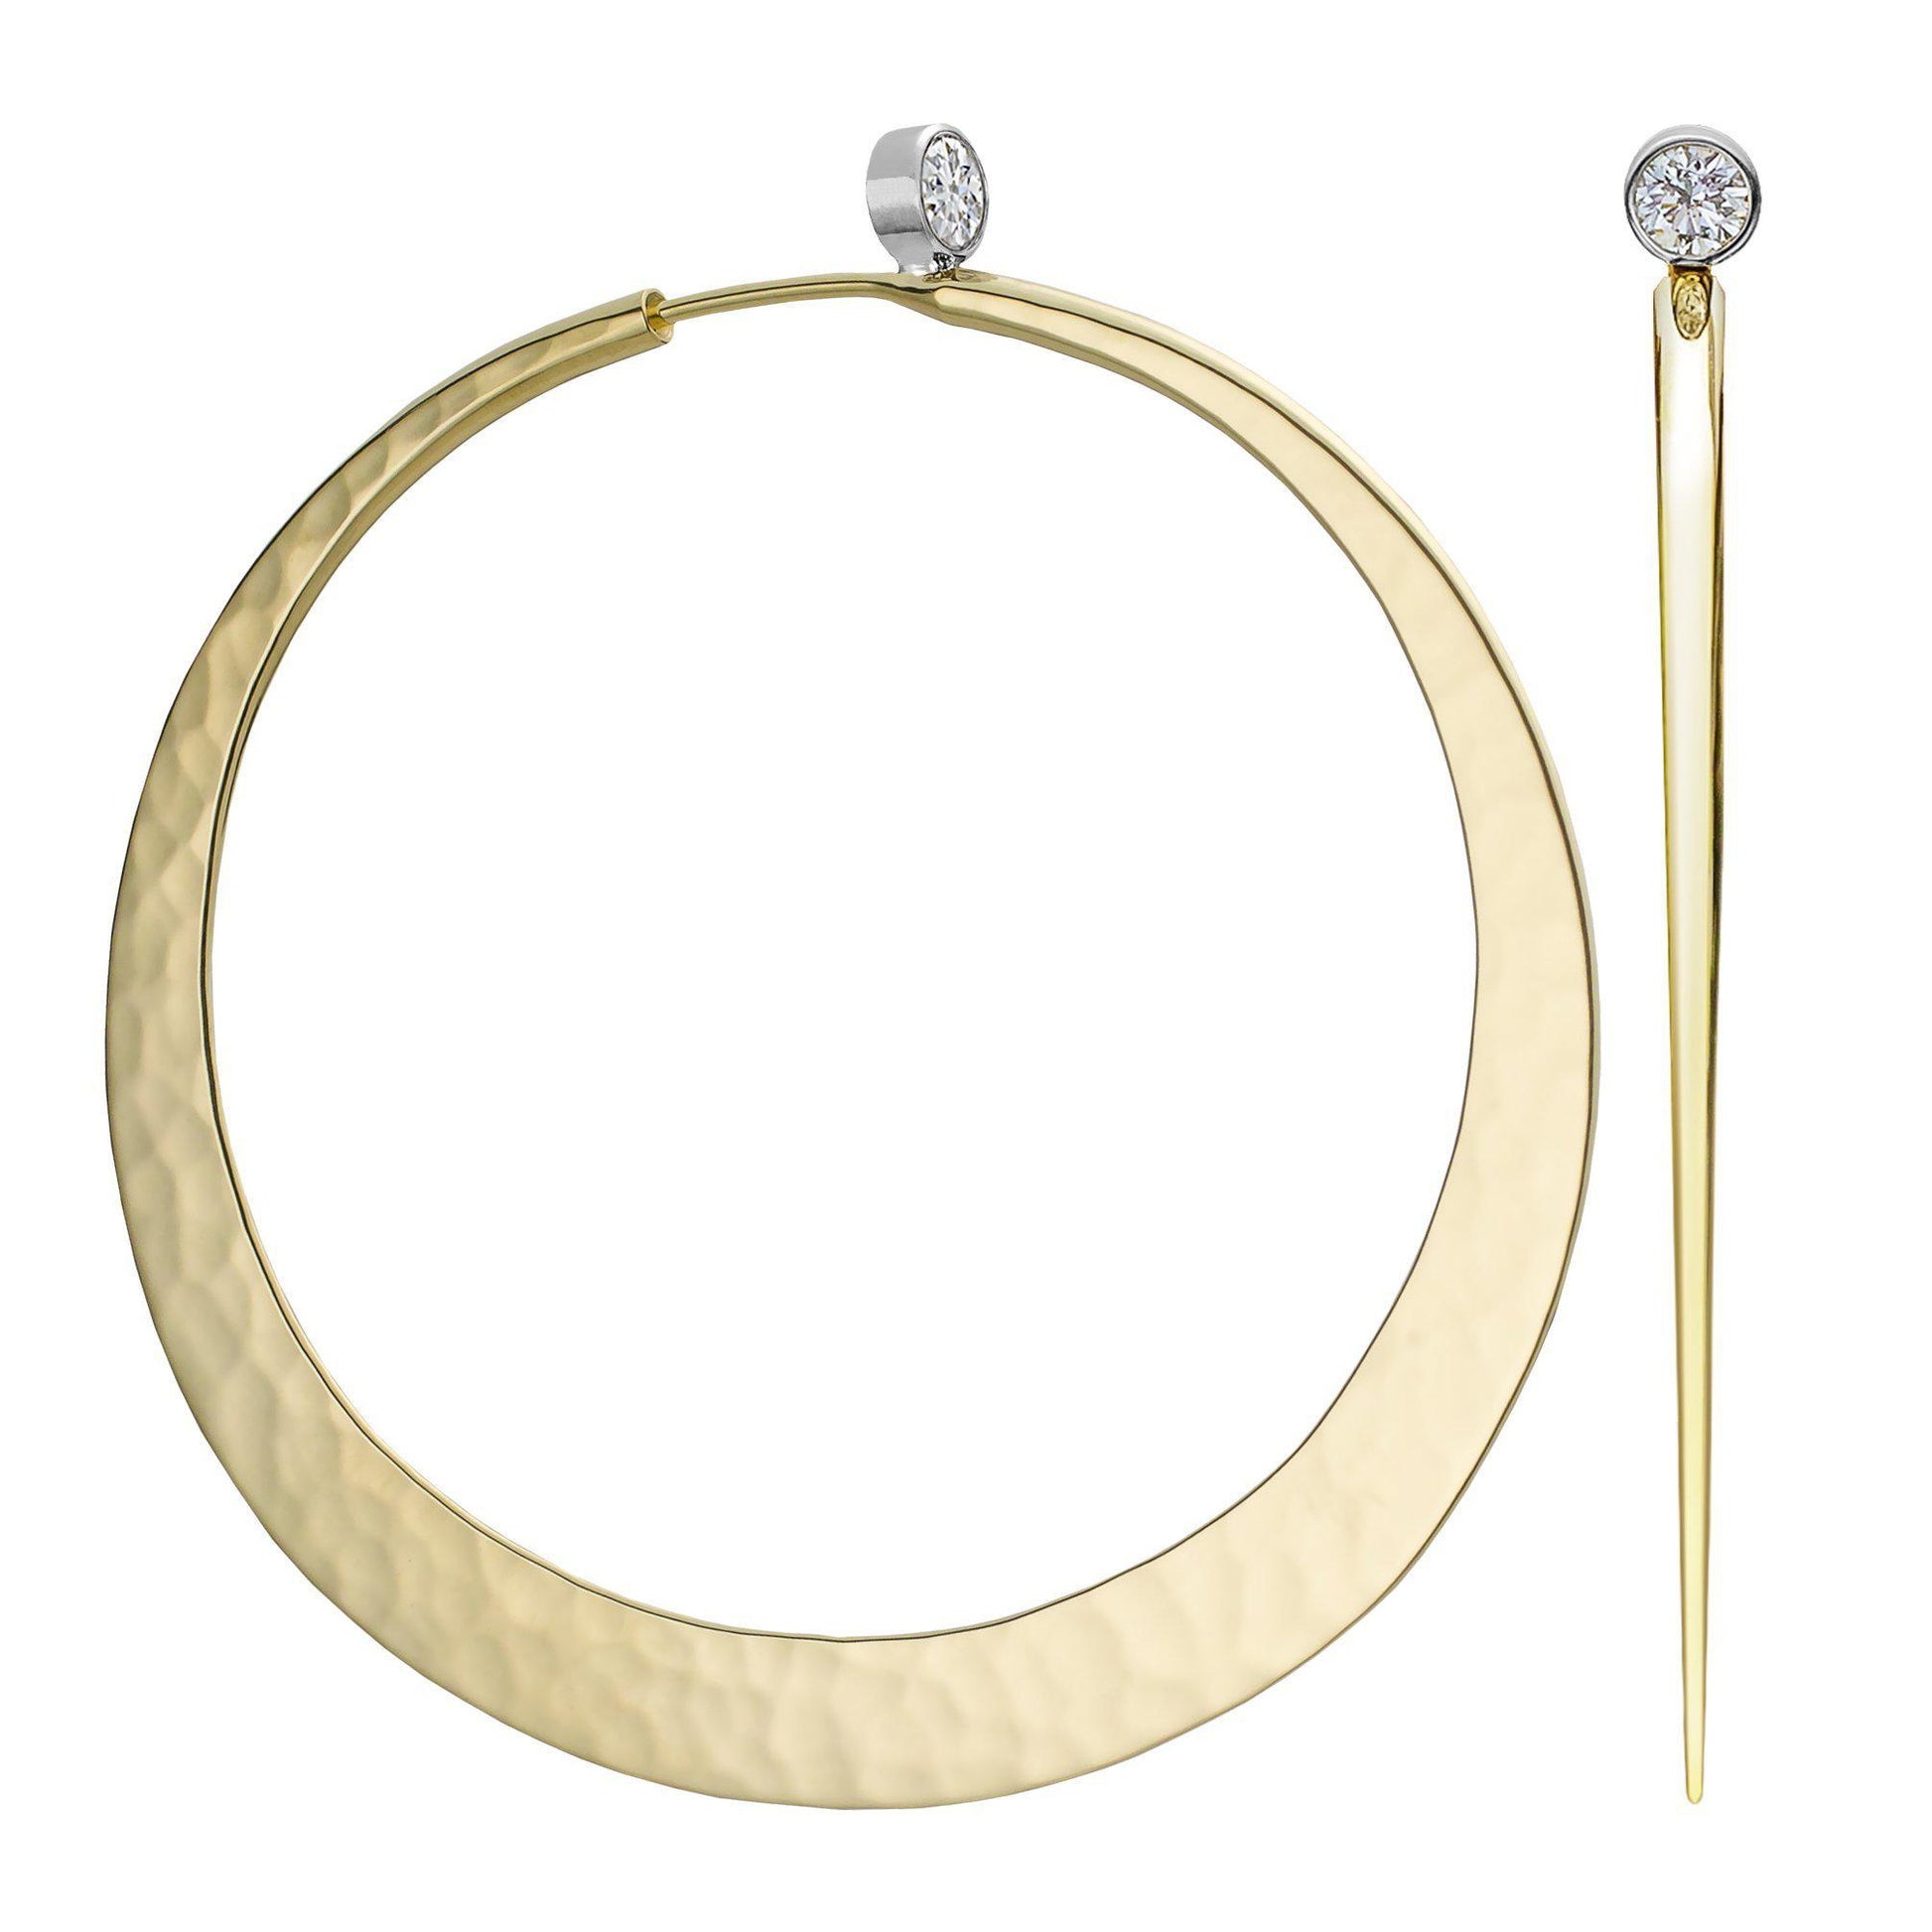 Toby Pomeroy-Brilliant Eclipse Diamond Hoop Earrings-Sorrel Sky Gallery-Jewelry